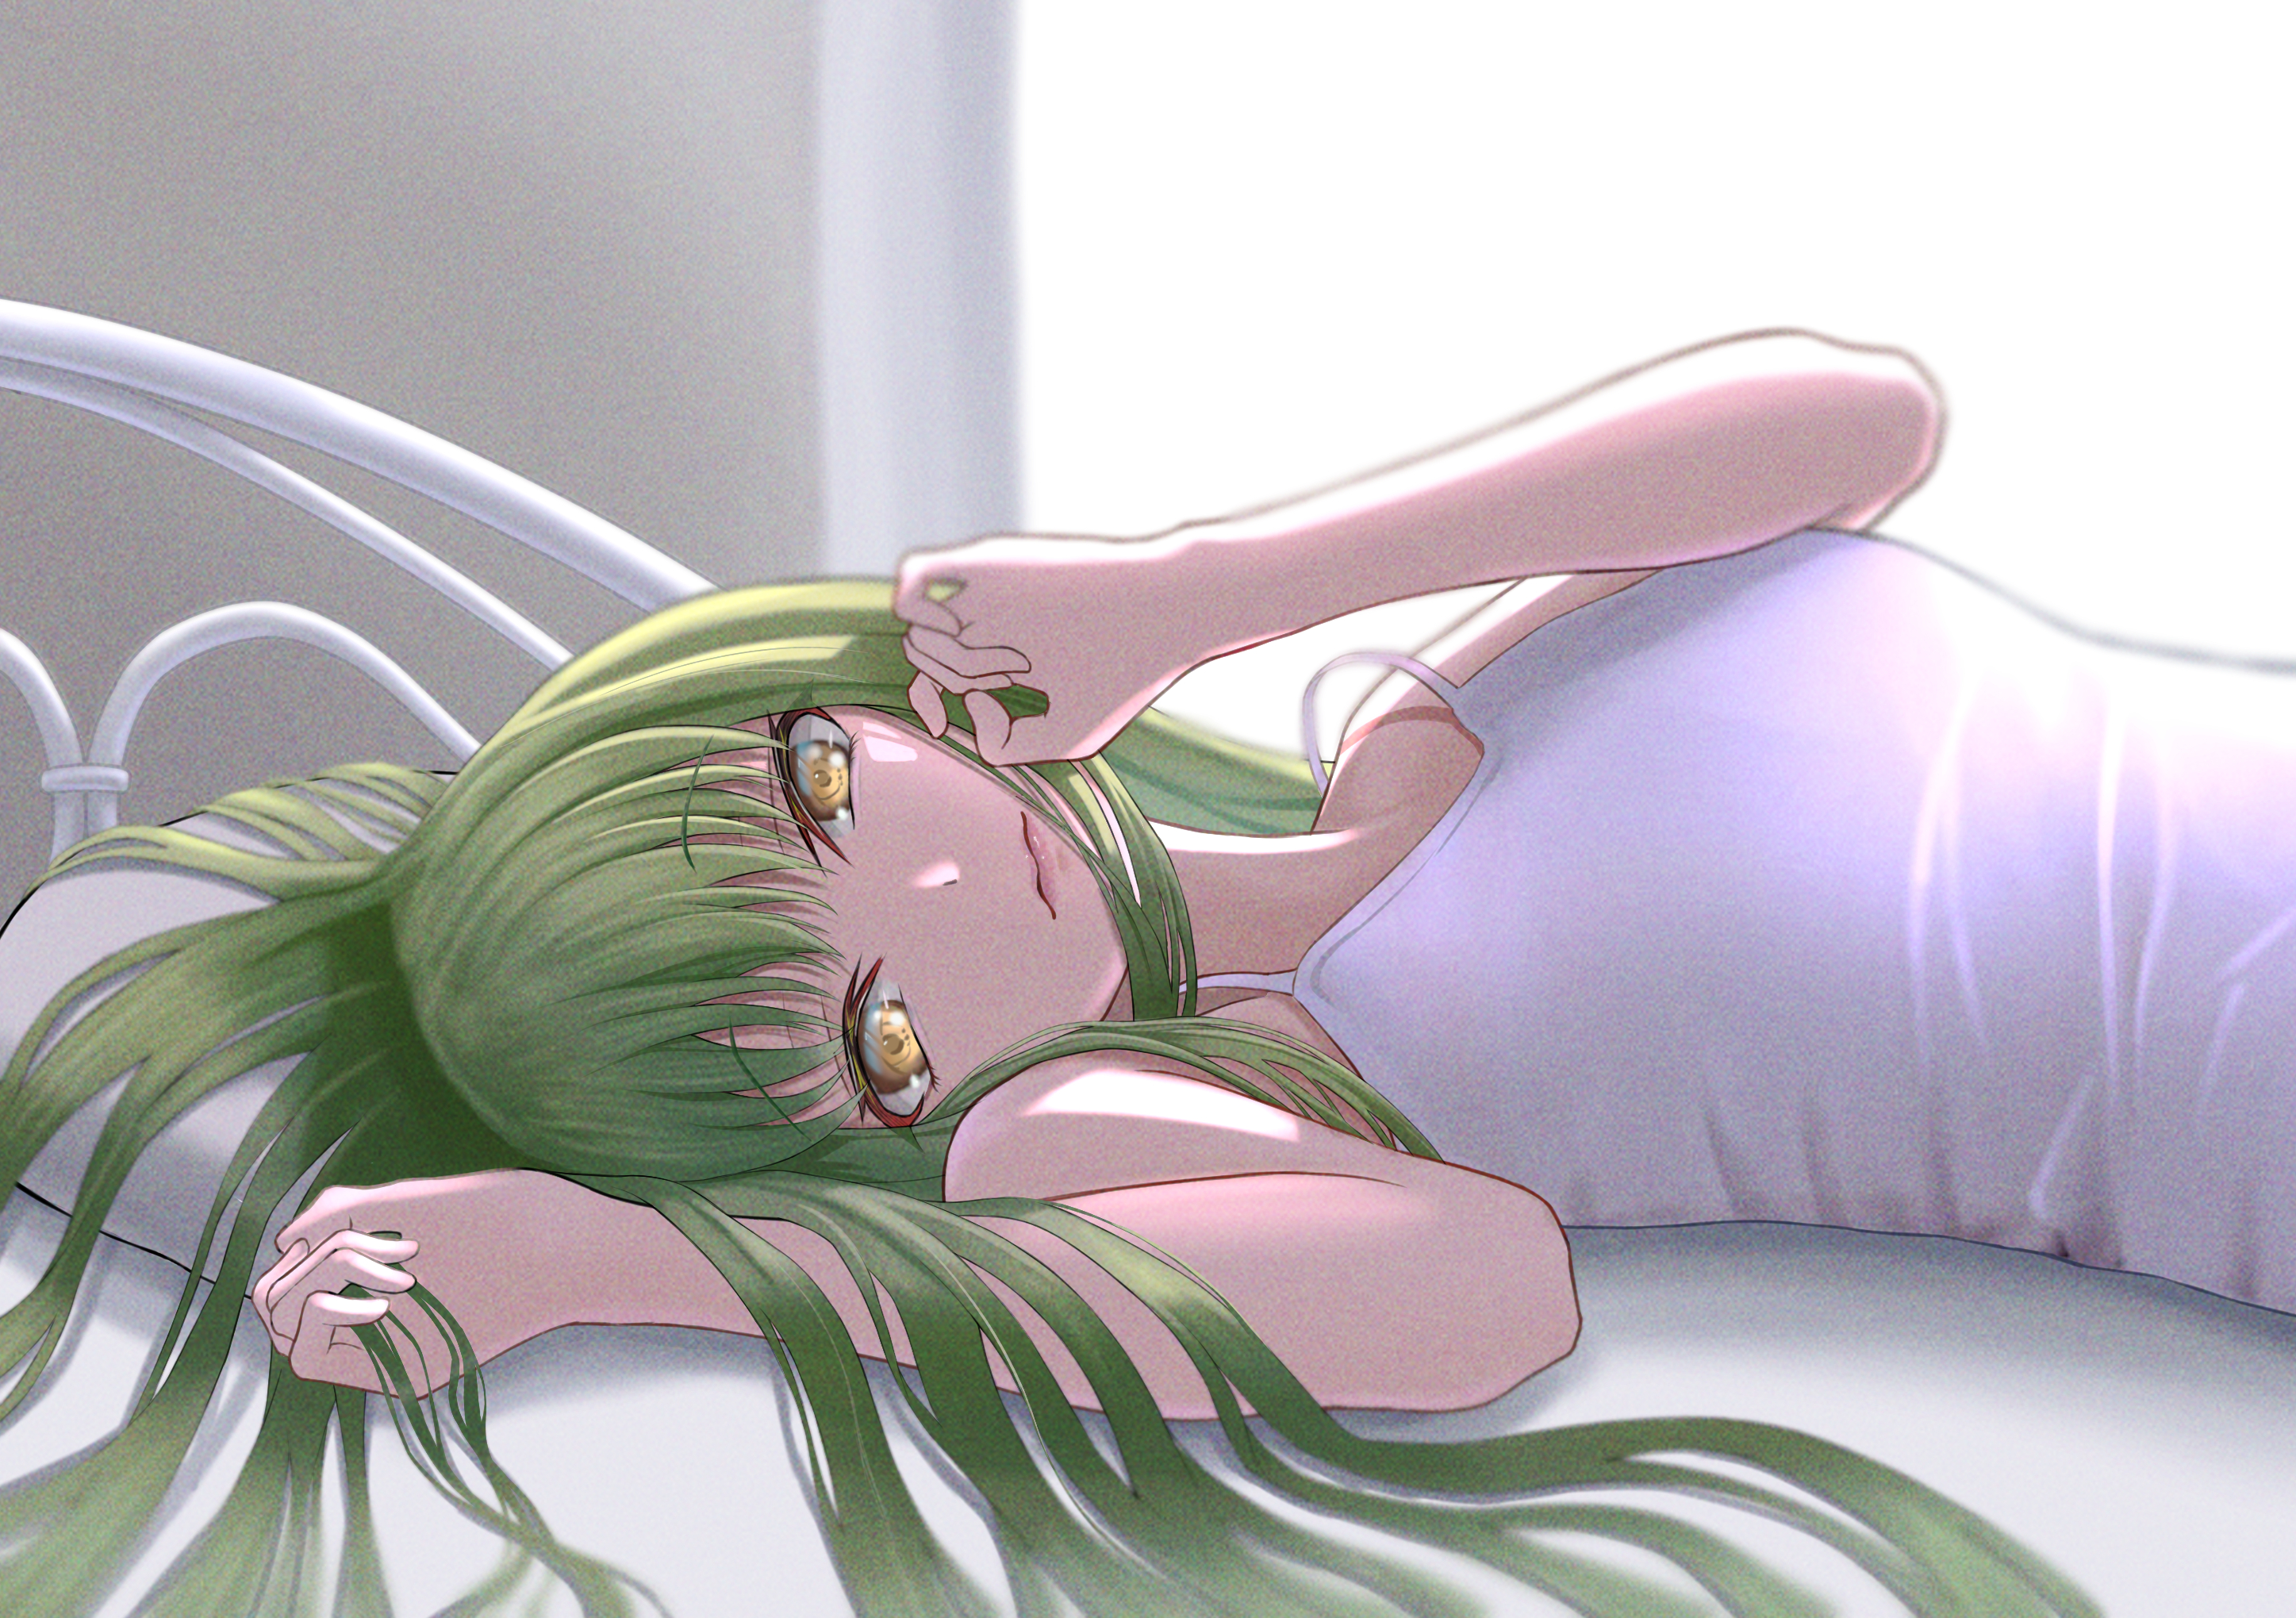 Anime Anime Girls Code Geass C C Code Geass Long Hair Green Hair Super Robot Taisen Artwork Digital  2894x2039